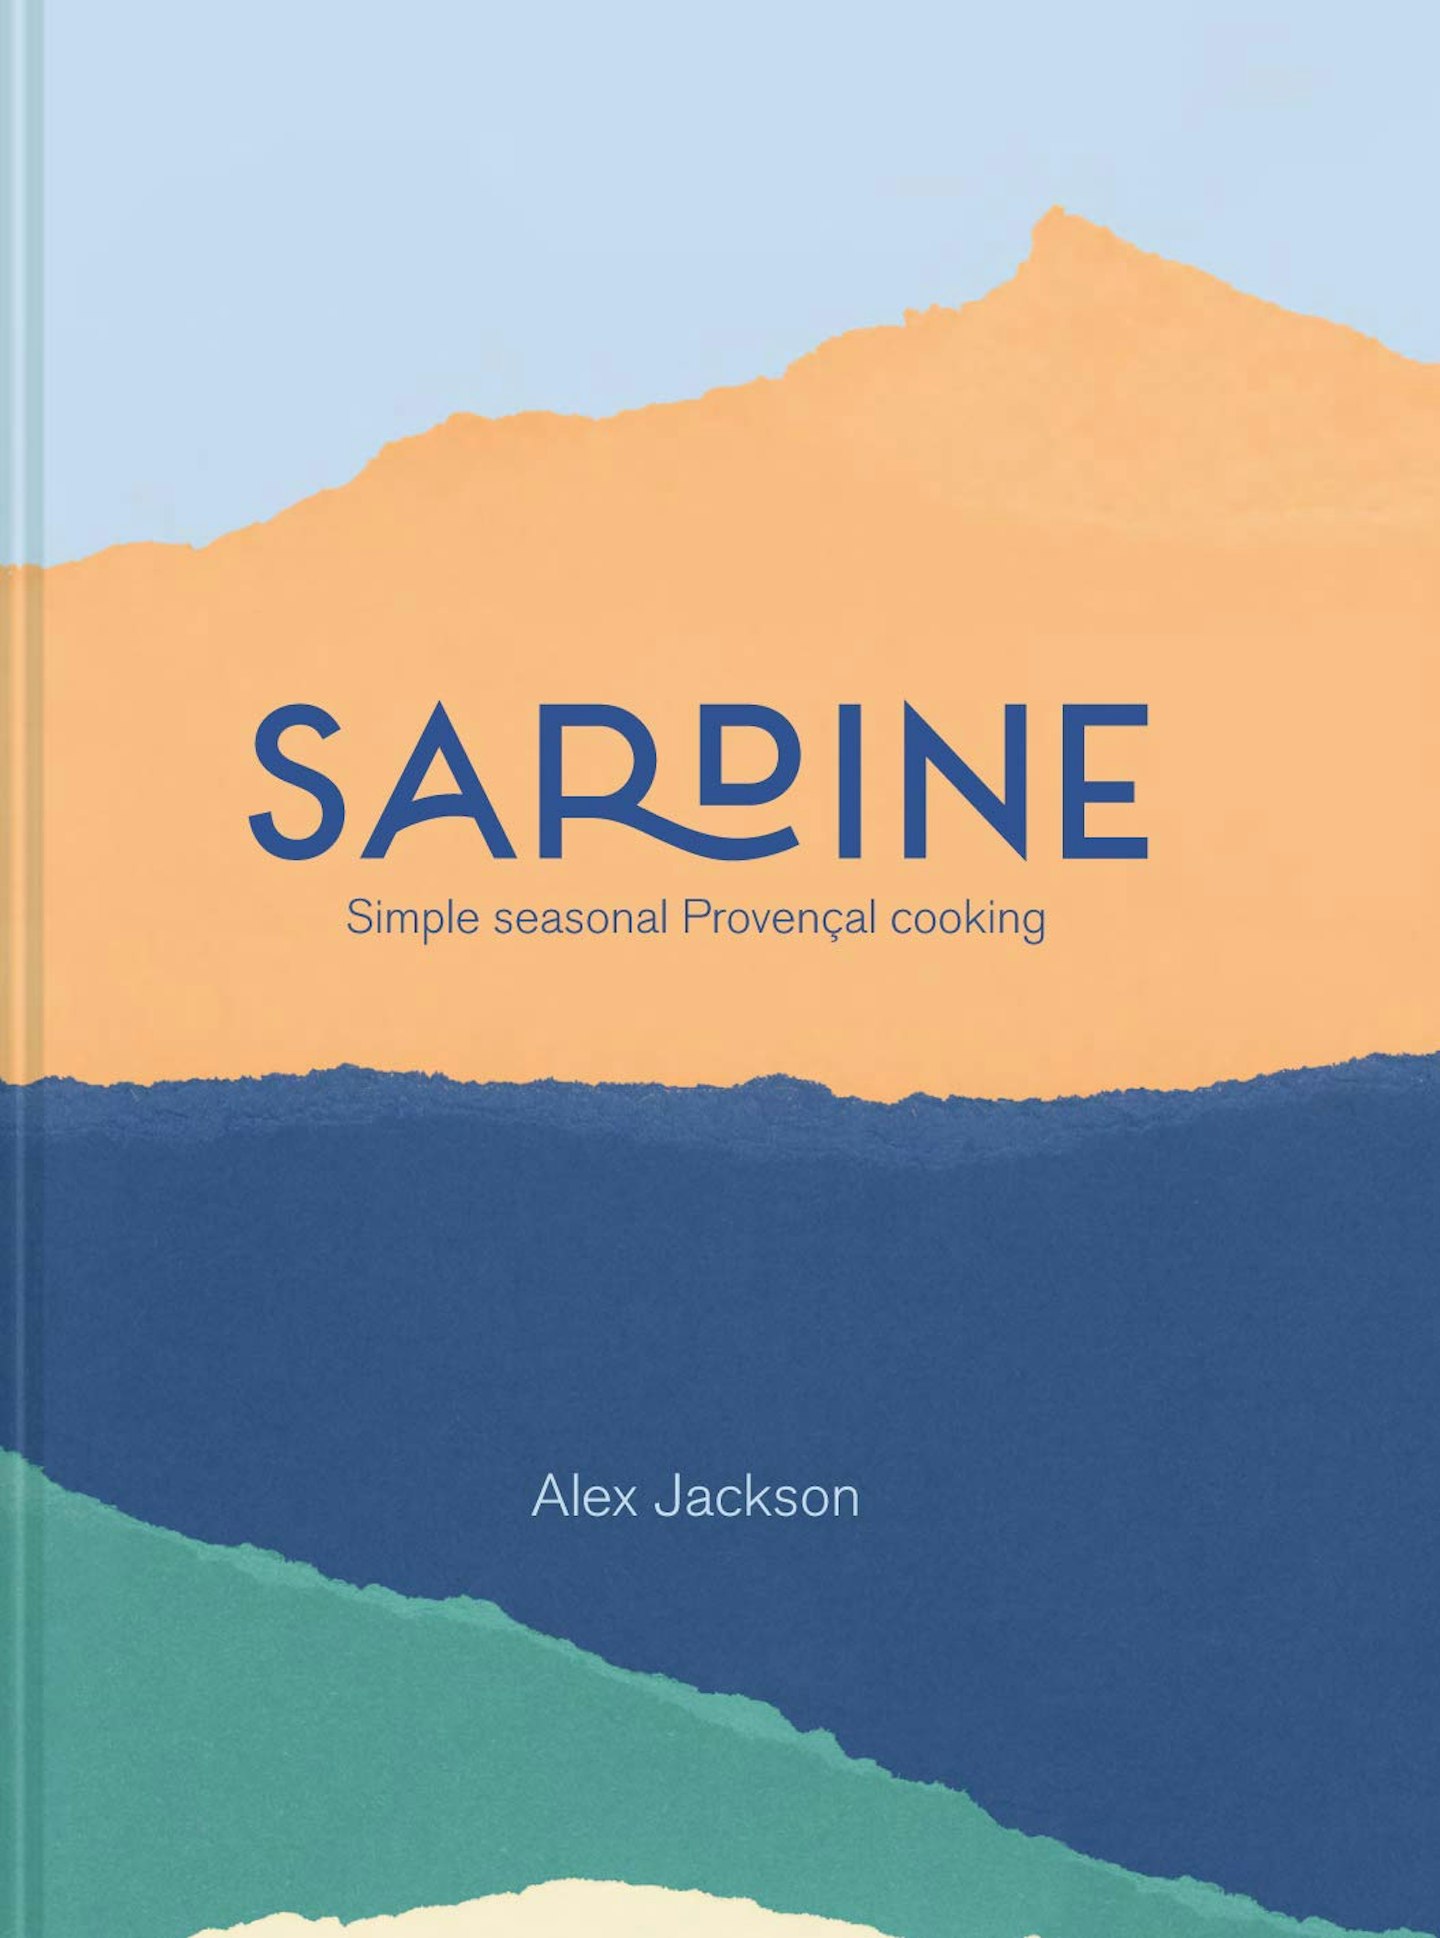 Sardine, by Alex Jackson